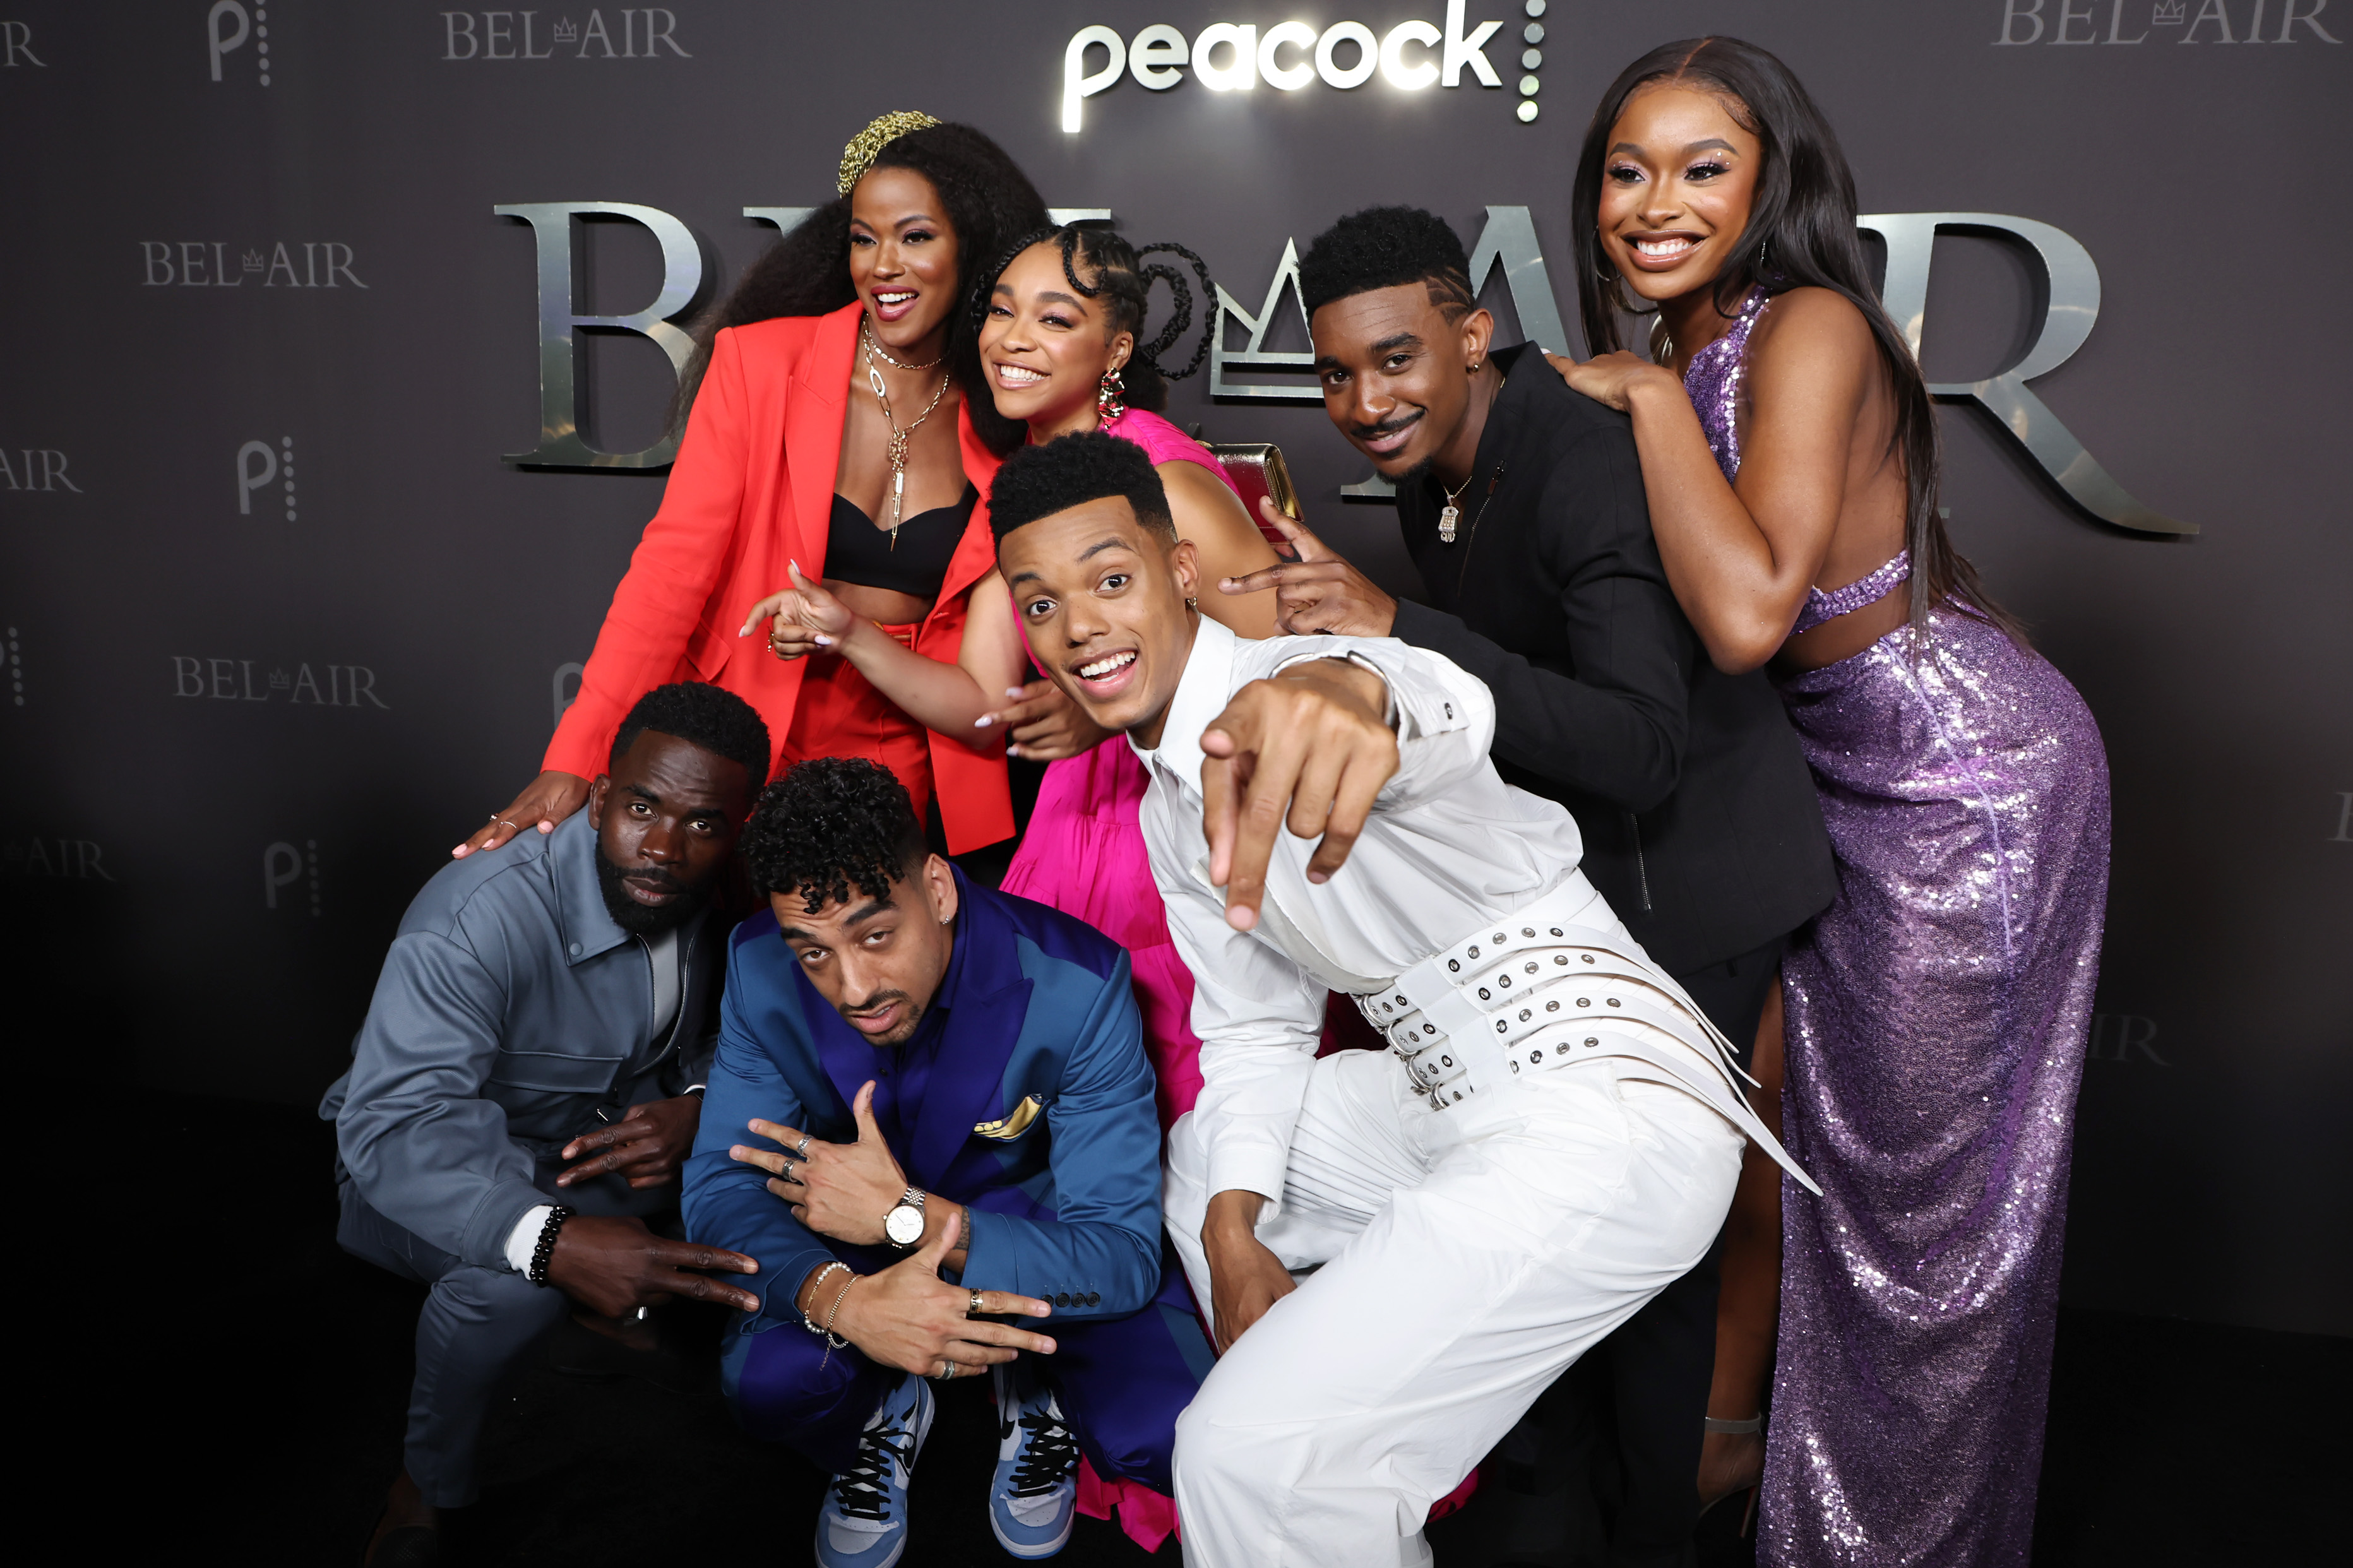 Jimmy Akingbola, Cassandra Freeman, Morgan Cooper, Simone Joy Jones, Jabari Banks, Jordan L. Jones, and Coco Jones posing together at 'Bel-Air' premiere